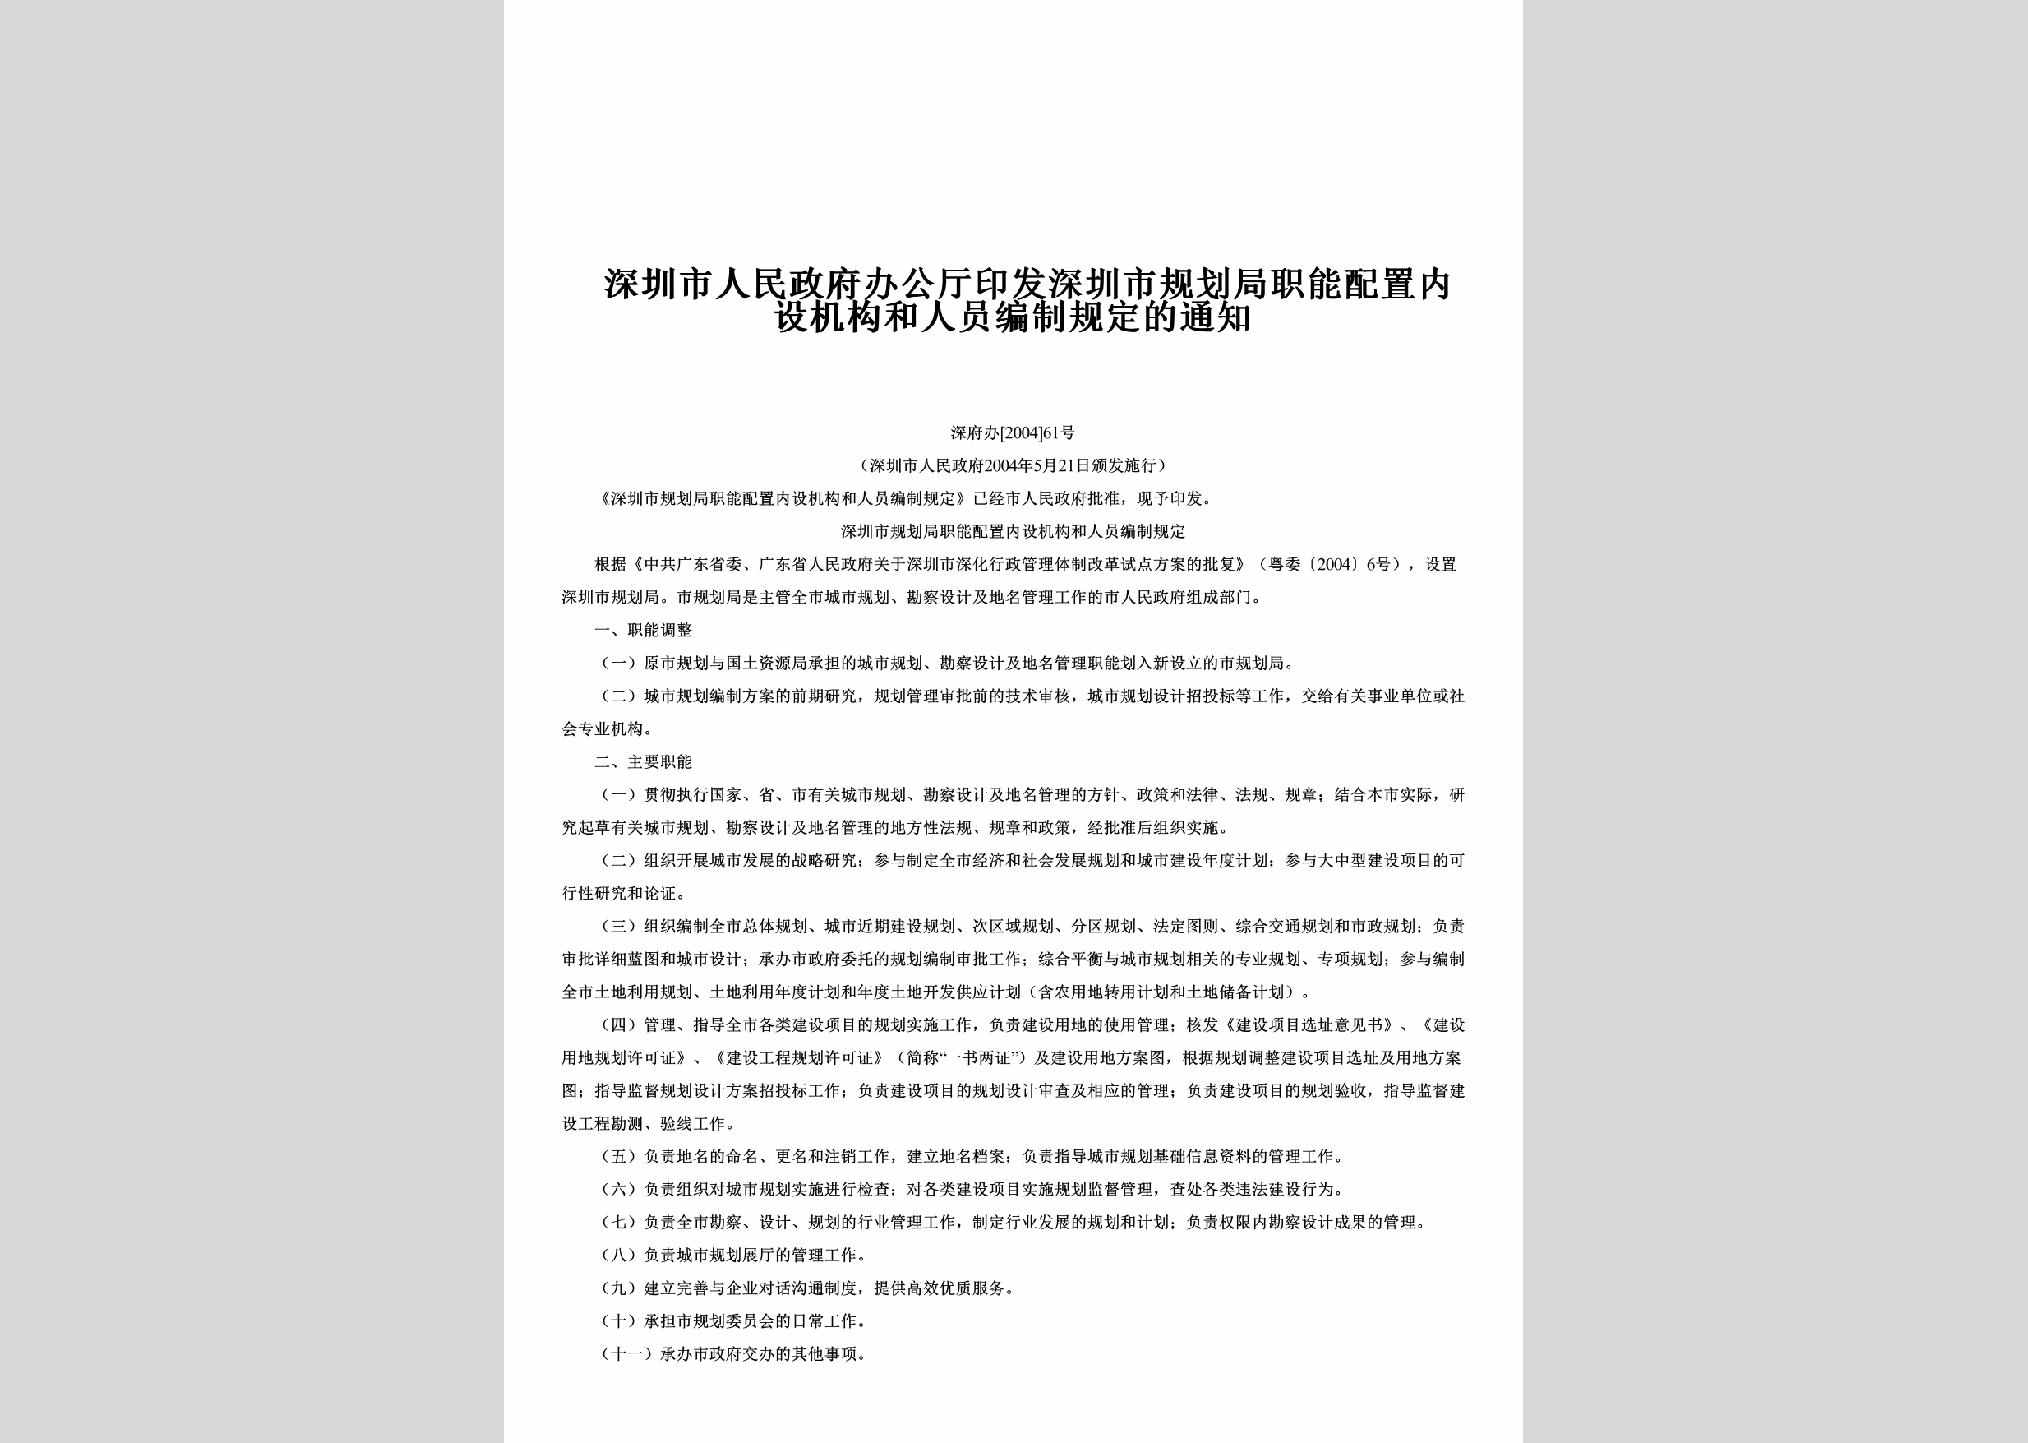 深府办[2004]61号：印发深圳市规划局职能配置内设机构和人员编制规定的通知